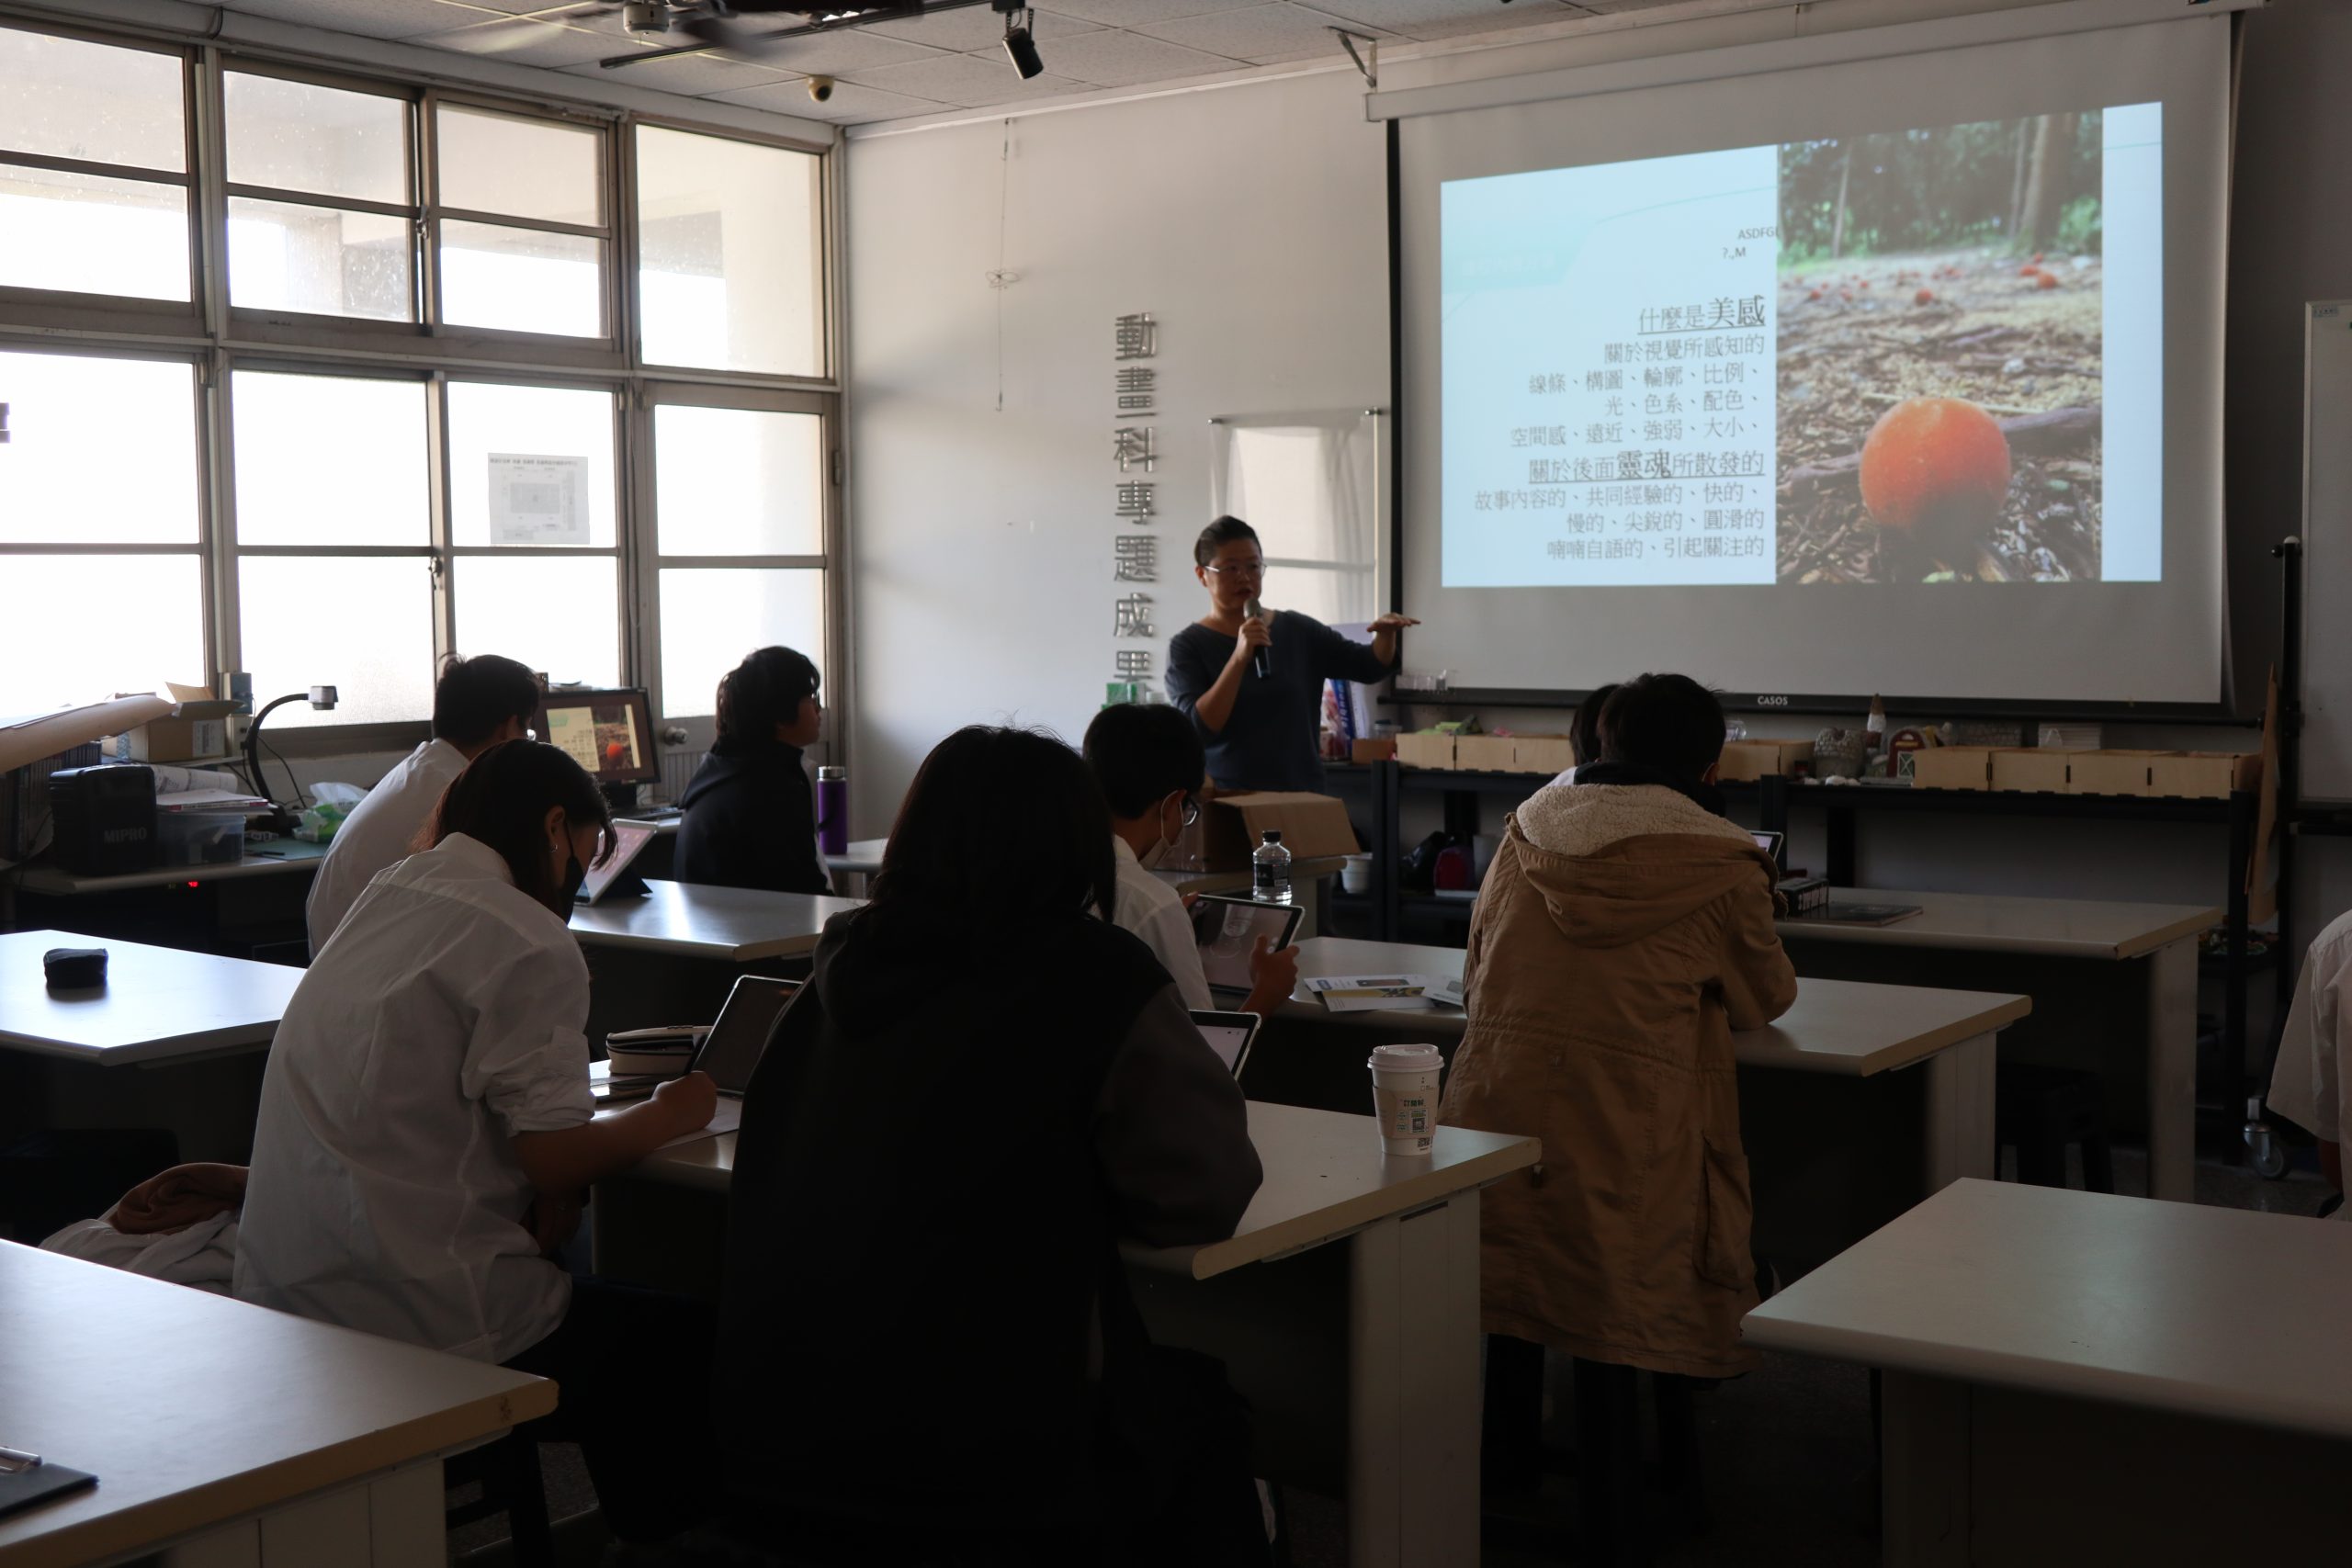 112學年度第一學期於雲林縣私立義峰高級中學施辦自拍拼圖課程實作紀錄系列照片共20張